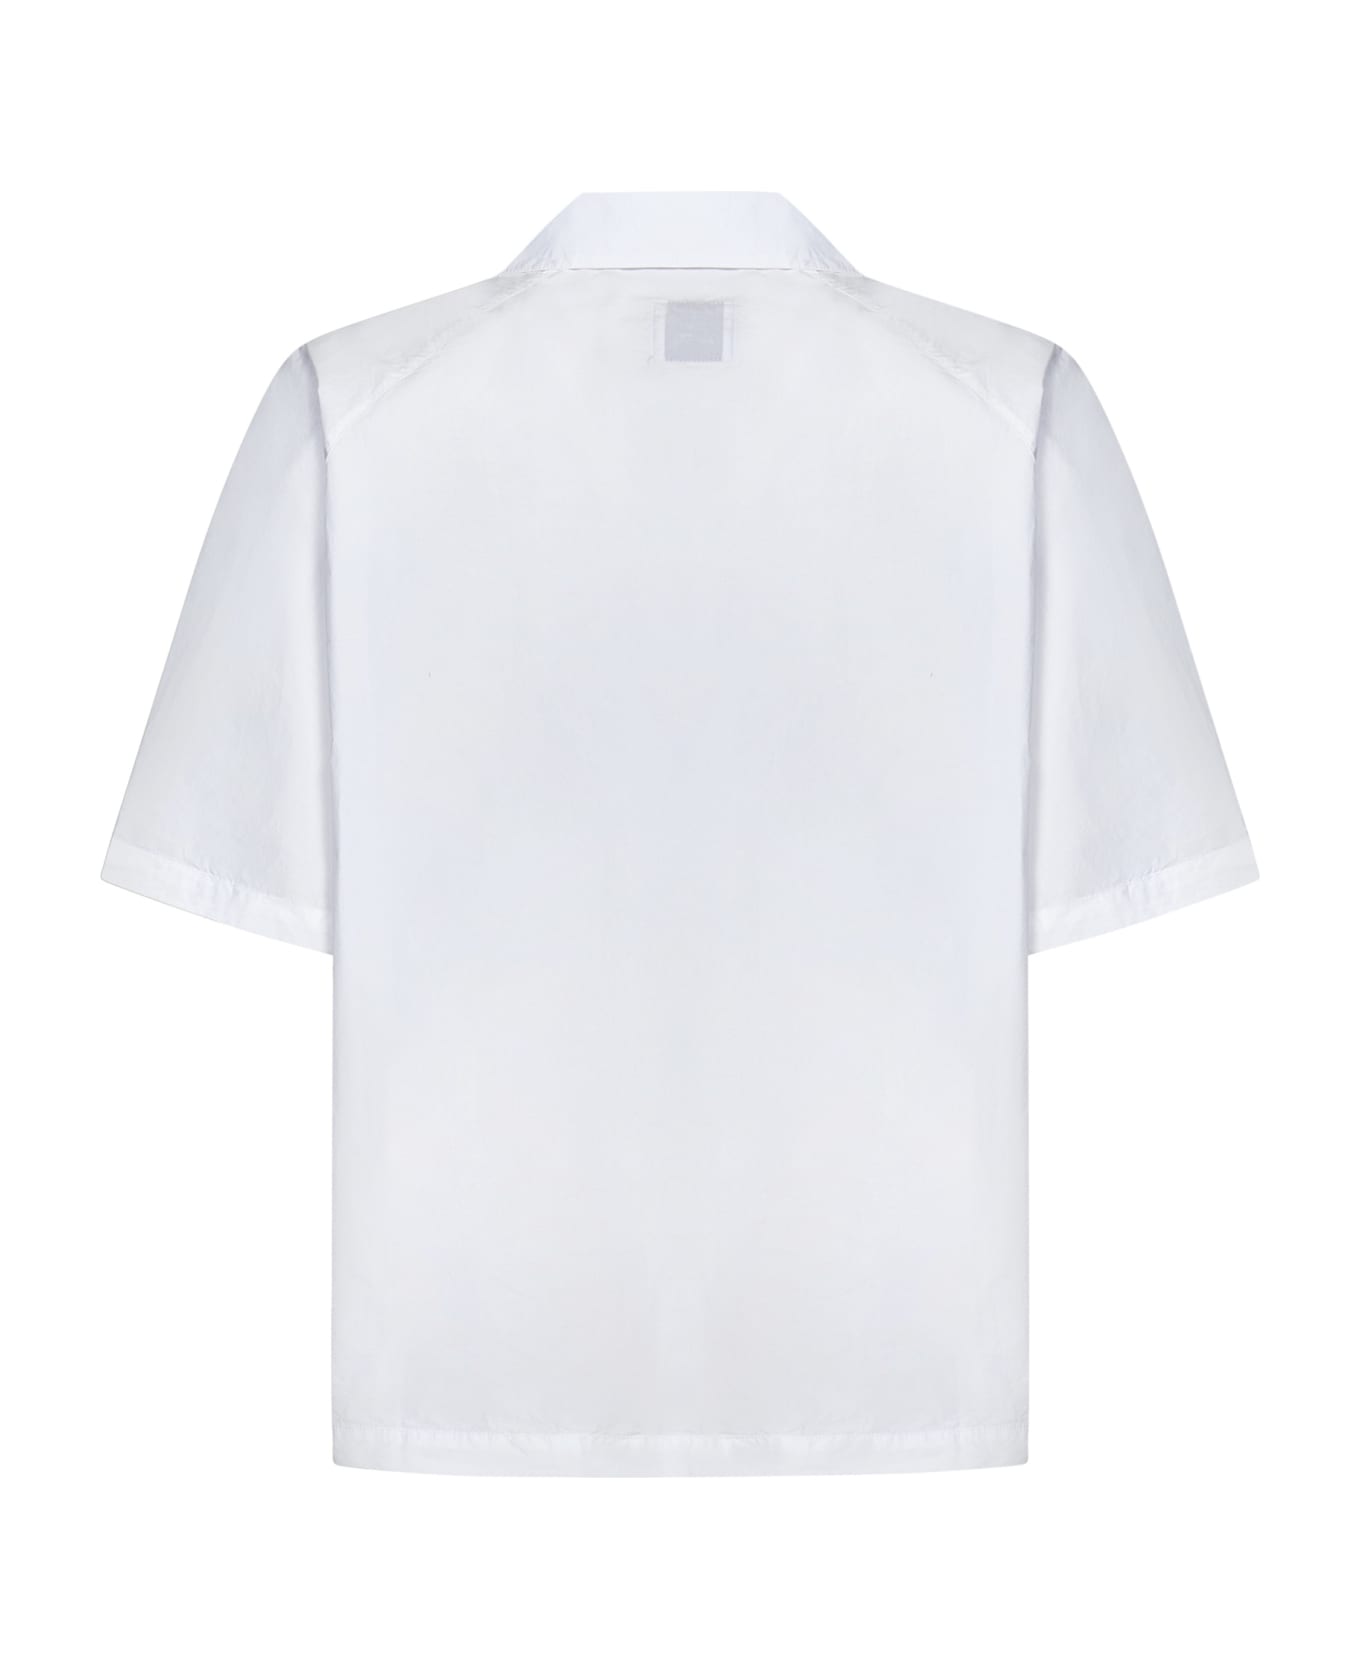 ROA Camp Shirt - White